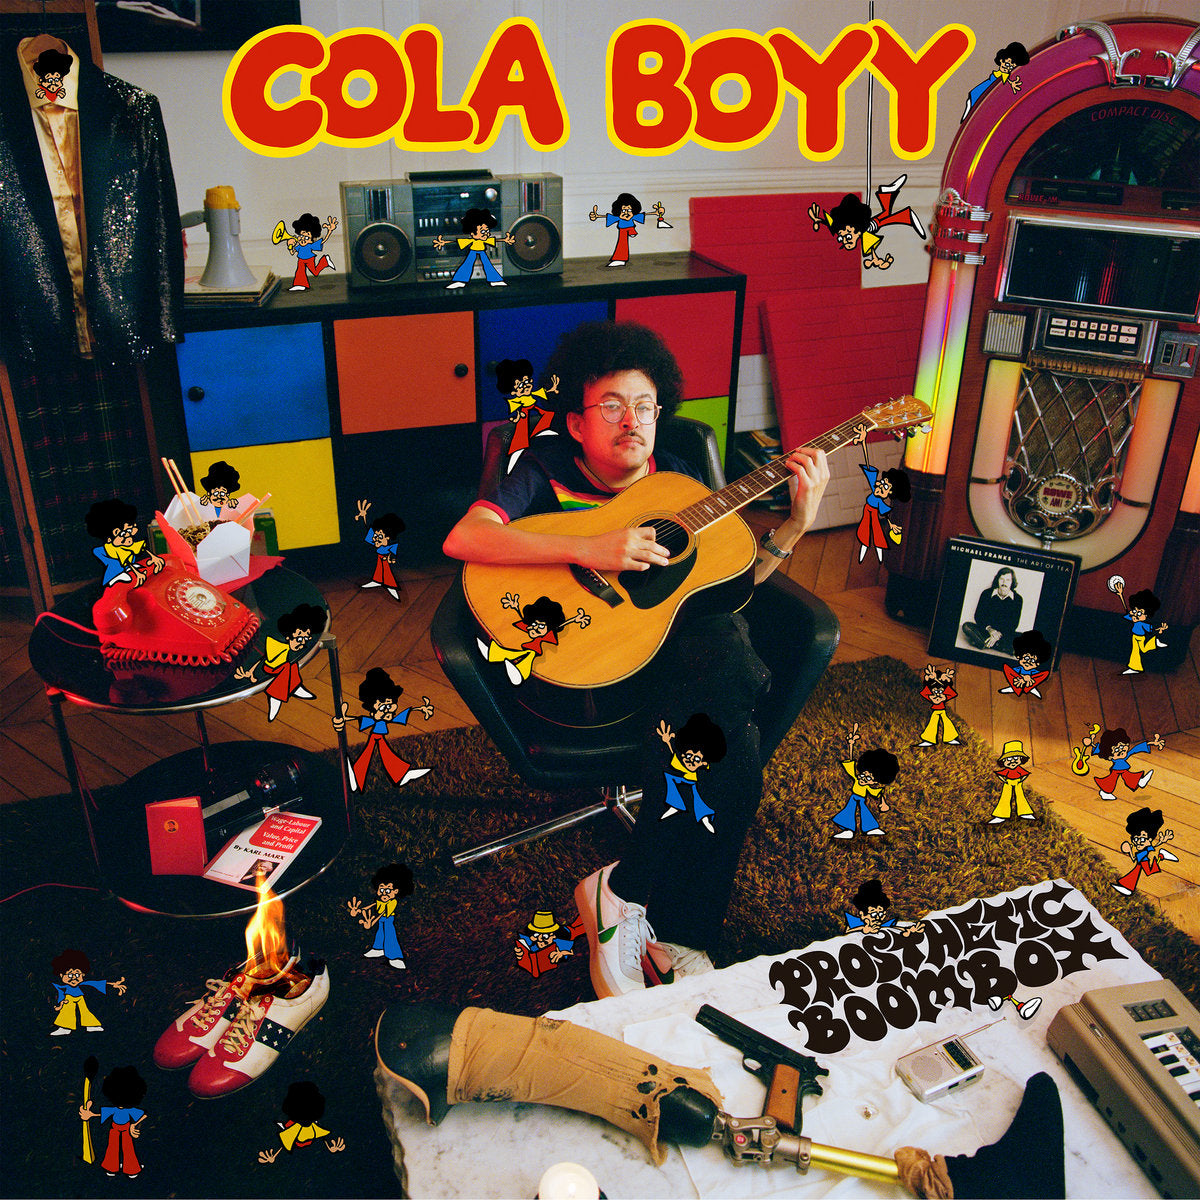 COLA BOYY - PROSTHETIC BOOMBOX Vinyl LP